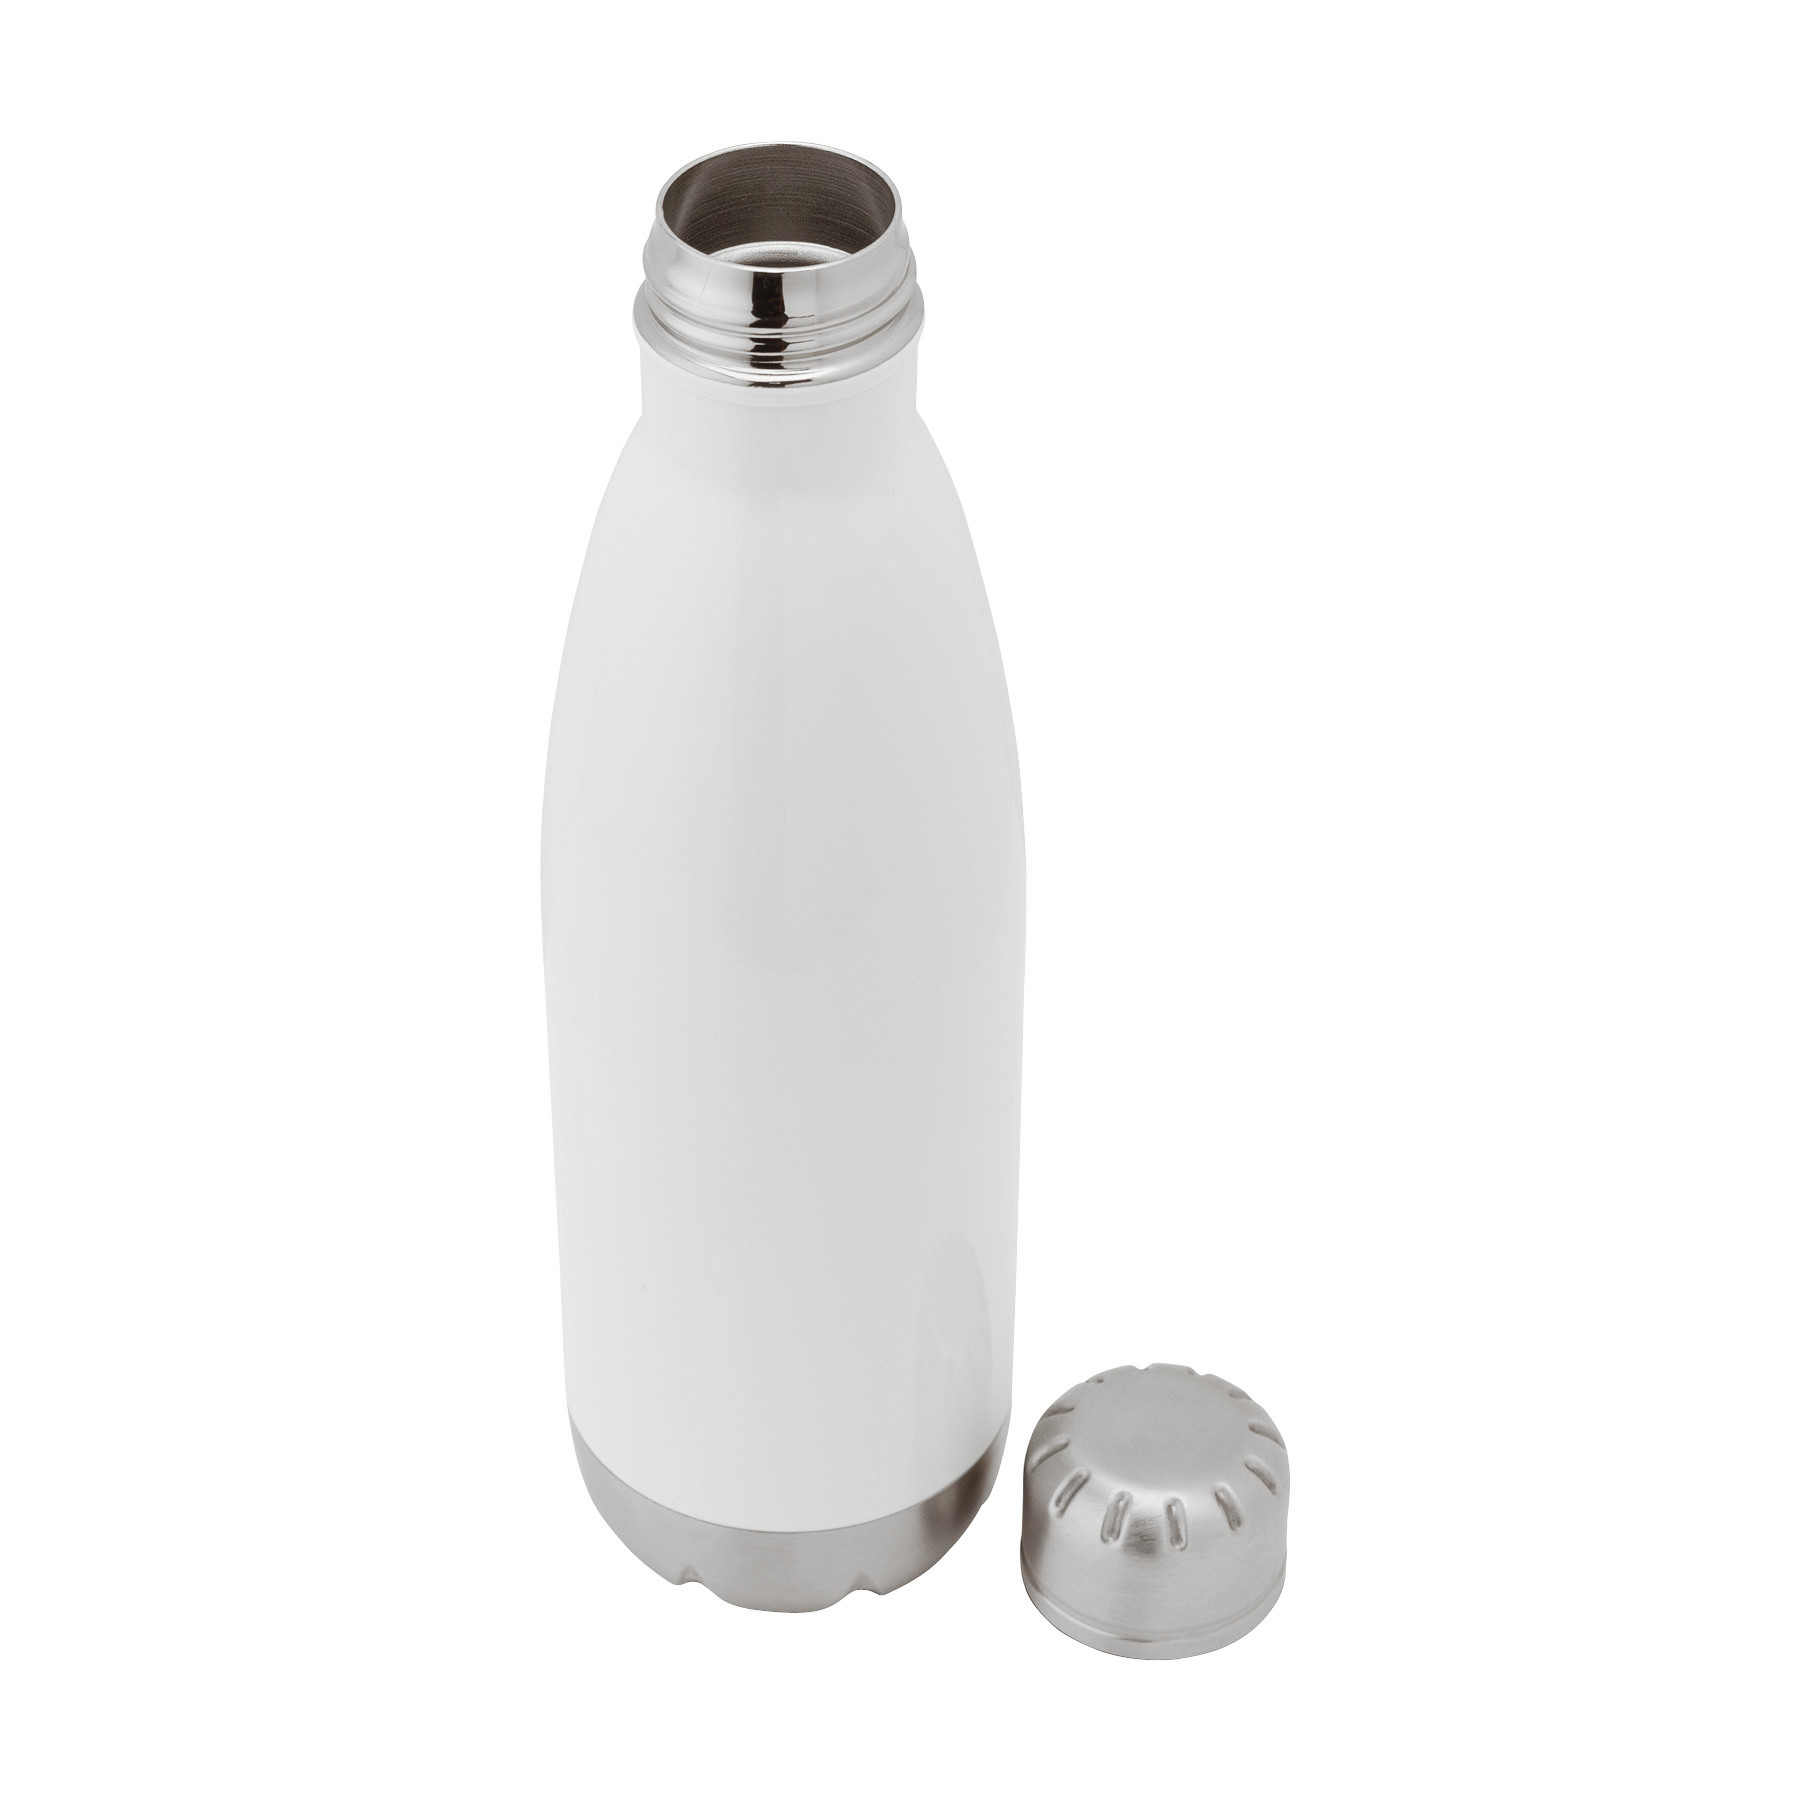 K7 22oz Stainless Steel Water Bottle - White - KAP7 International